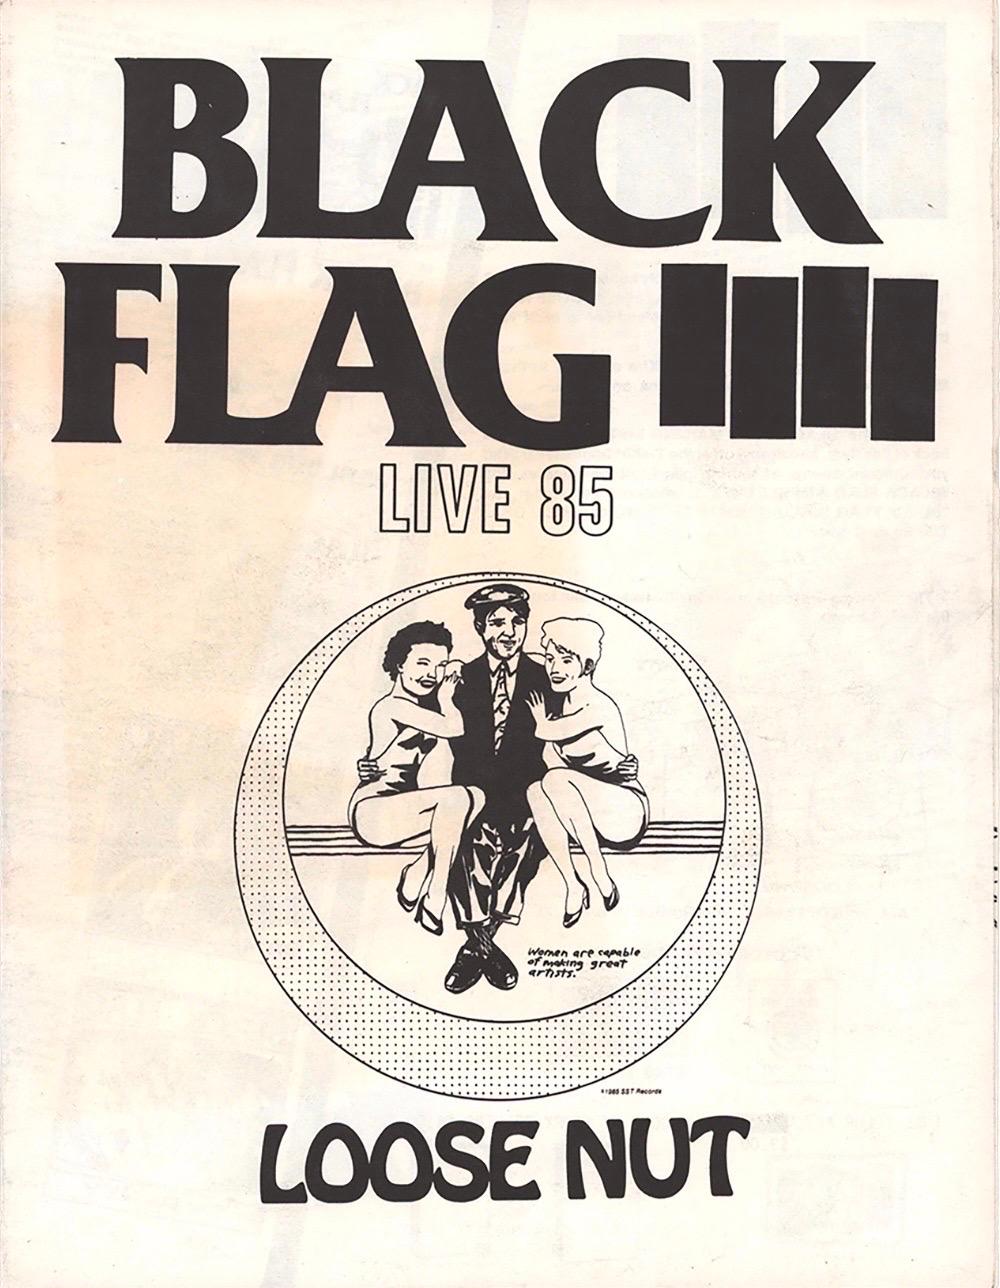 Raymond Pettibon, "Black Flag Live '85 Loose Nut":
Doppelseitig faltbarer, von Raymond Pettibon illustrierter Merchandising-Flyer für SST Records, der für Black Flag-Platten und Raymond Pettibon-Bücher wirbt (Bild 4). 

Offsetdruck; 8,5 x 11 Zoll